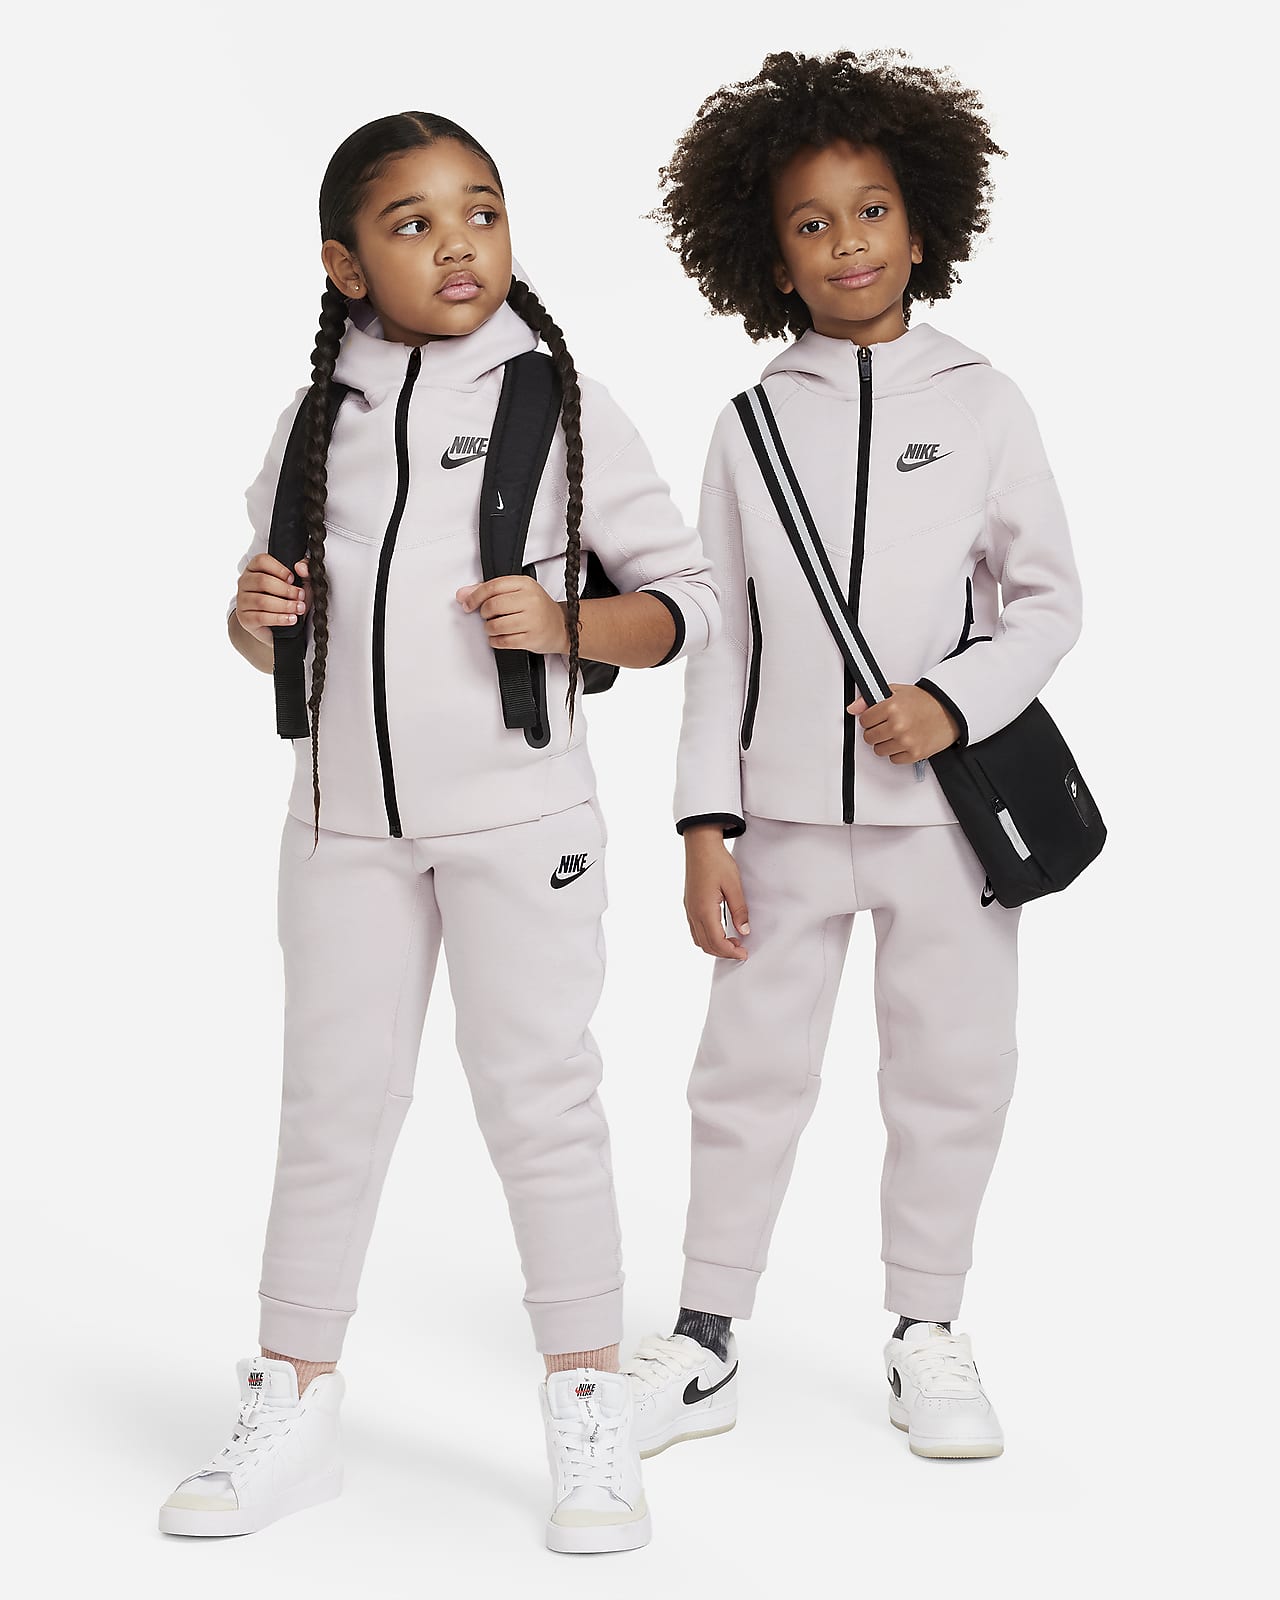 Nike Younger Kids' Jacket and Leggings Set. Nike LU